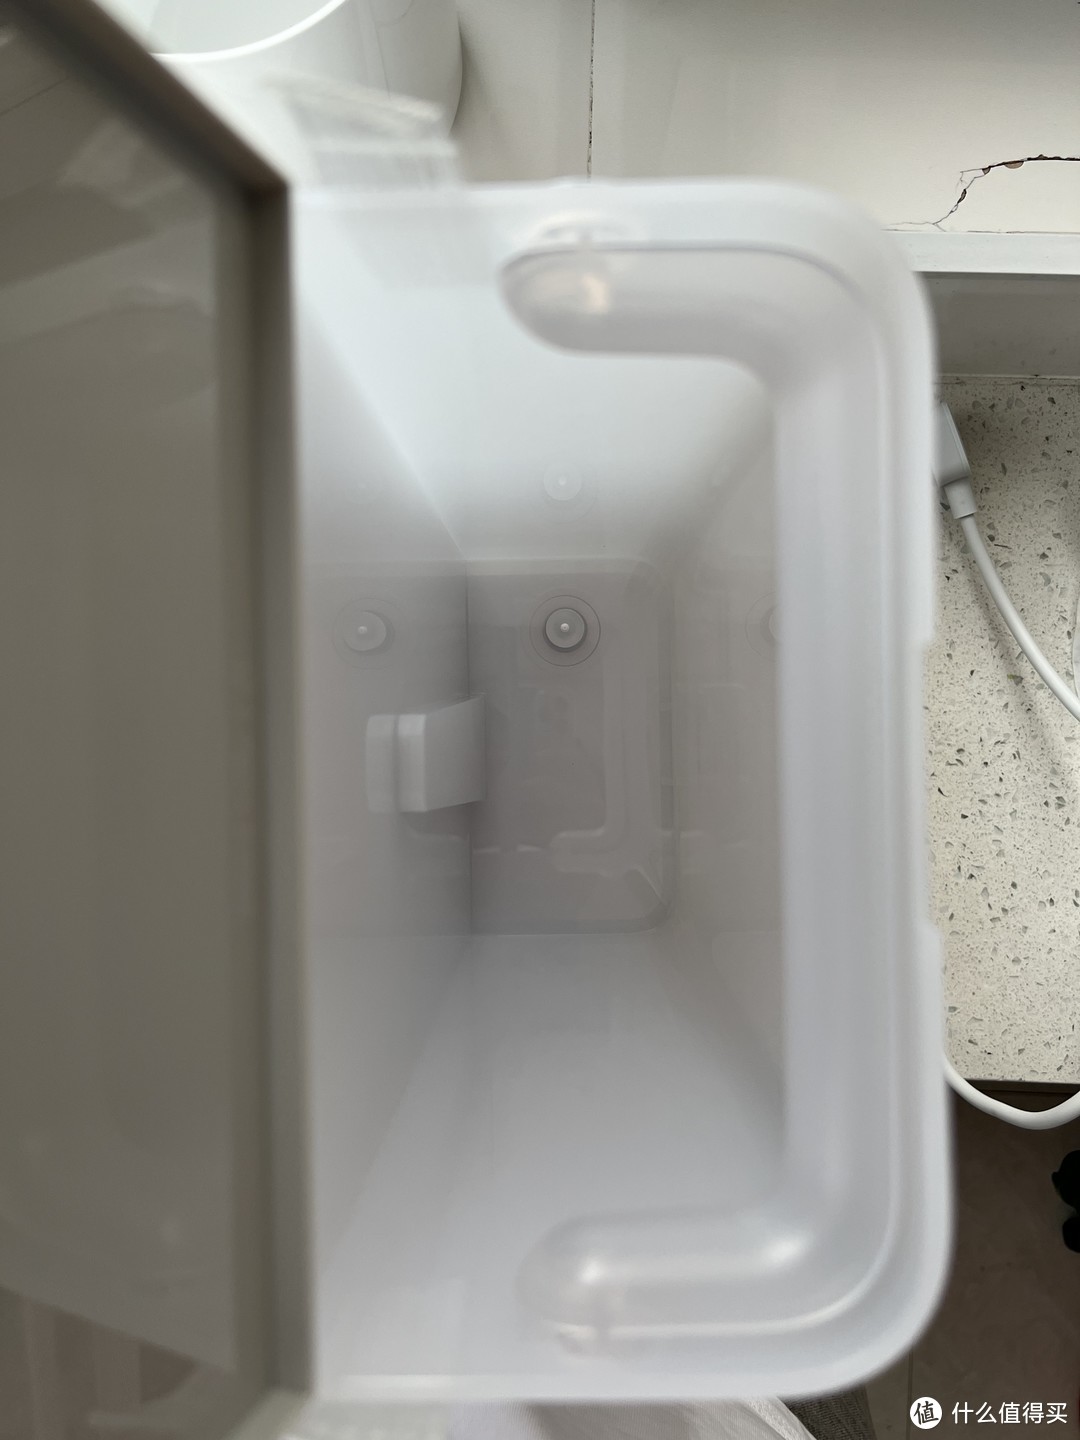 懒人最该买的破壁机，没有之一——小米智能免手洗破壁机